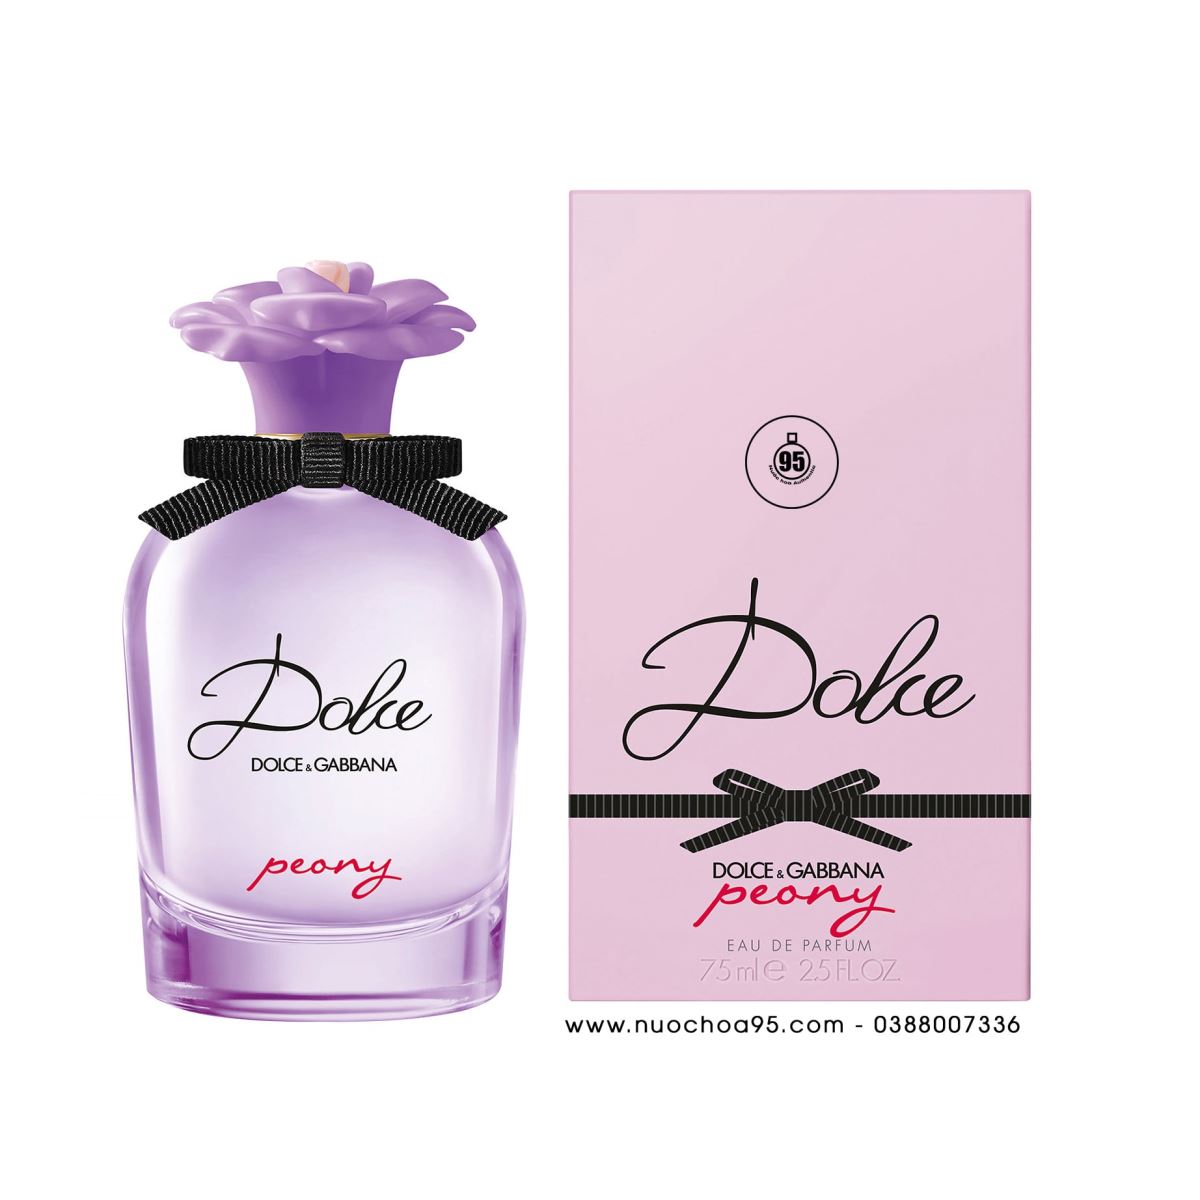 Nước hoa nữ Dolce & Gabbana Dolce Peony của hãng Dolce & Gabbana